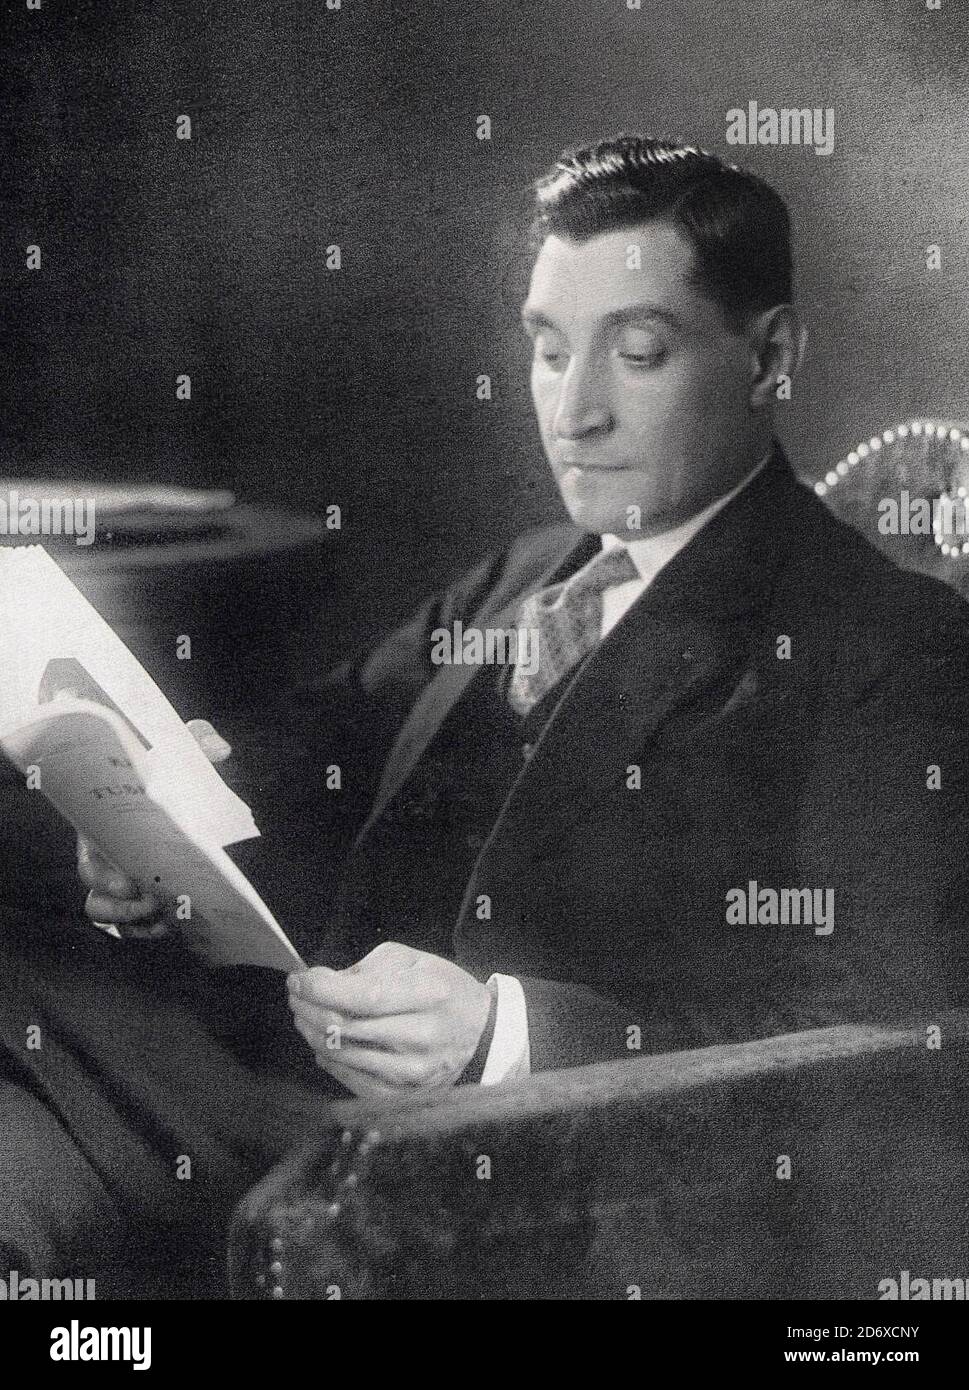 Imagen del líder portugués Antonio Oliveira de Salazar, alrededor de 1940 Foto de stock